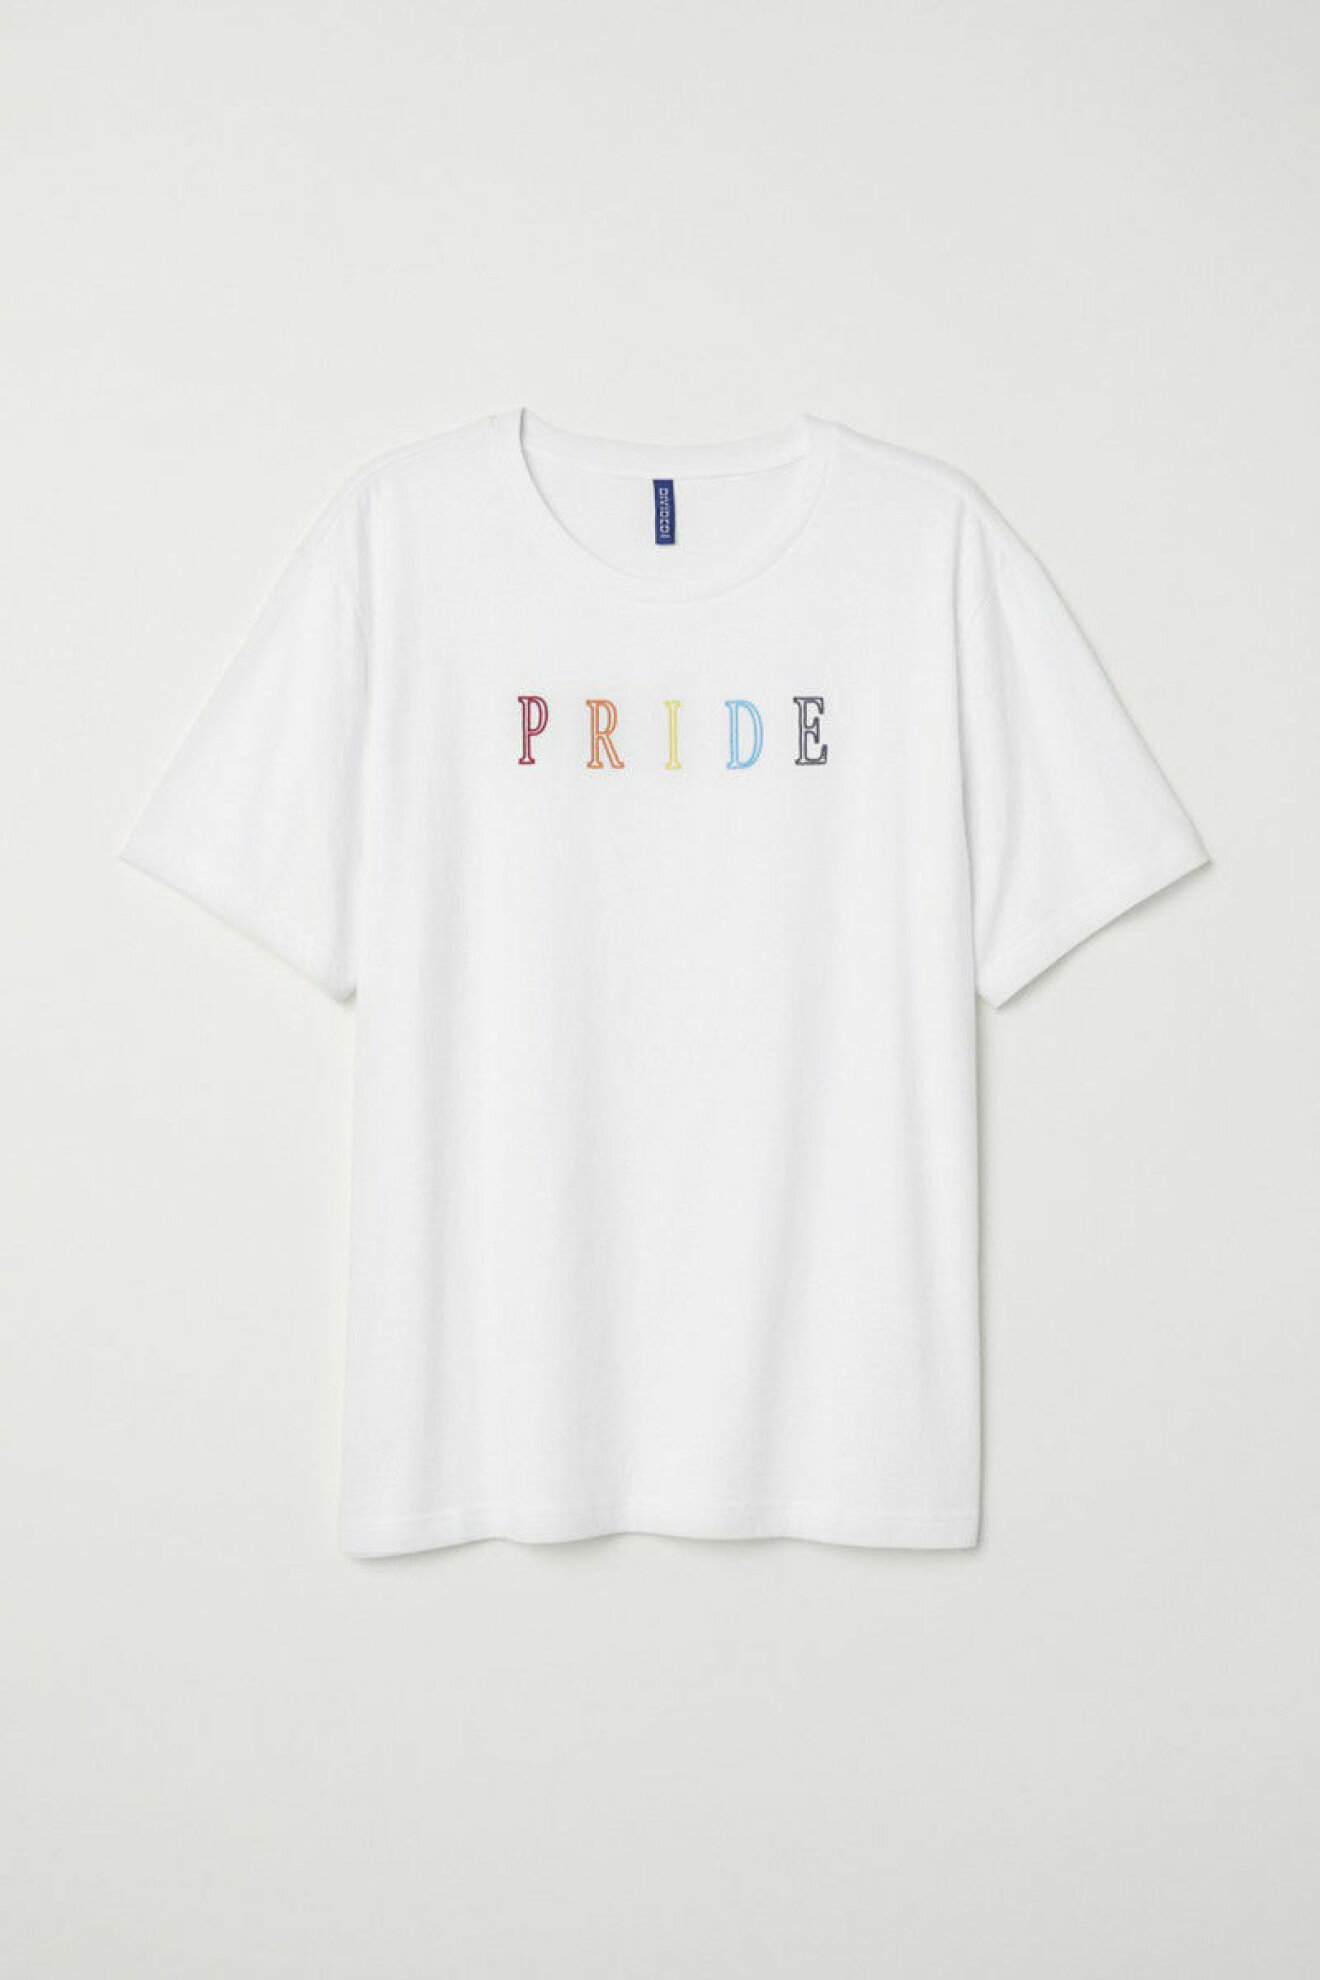 T-shirt, pride out loud, H&M pride-kollektion. 